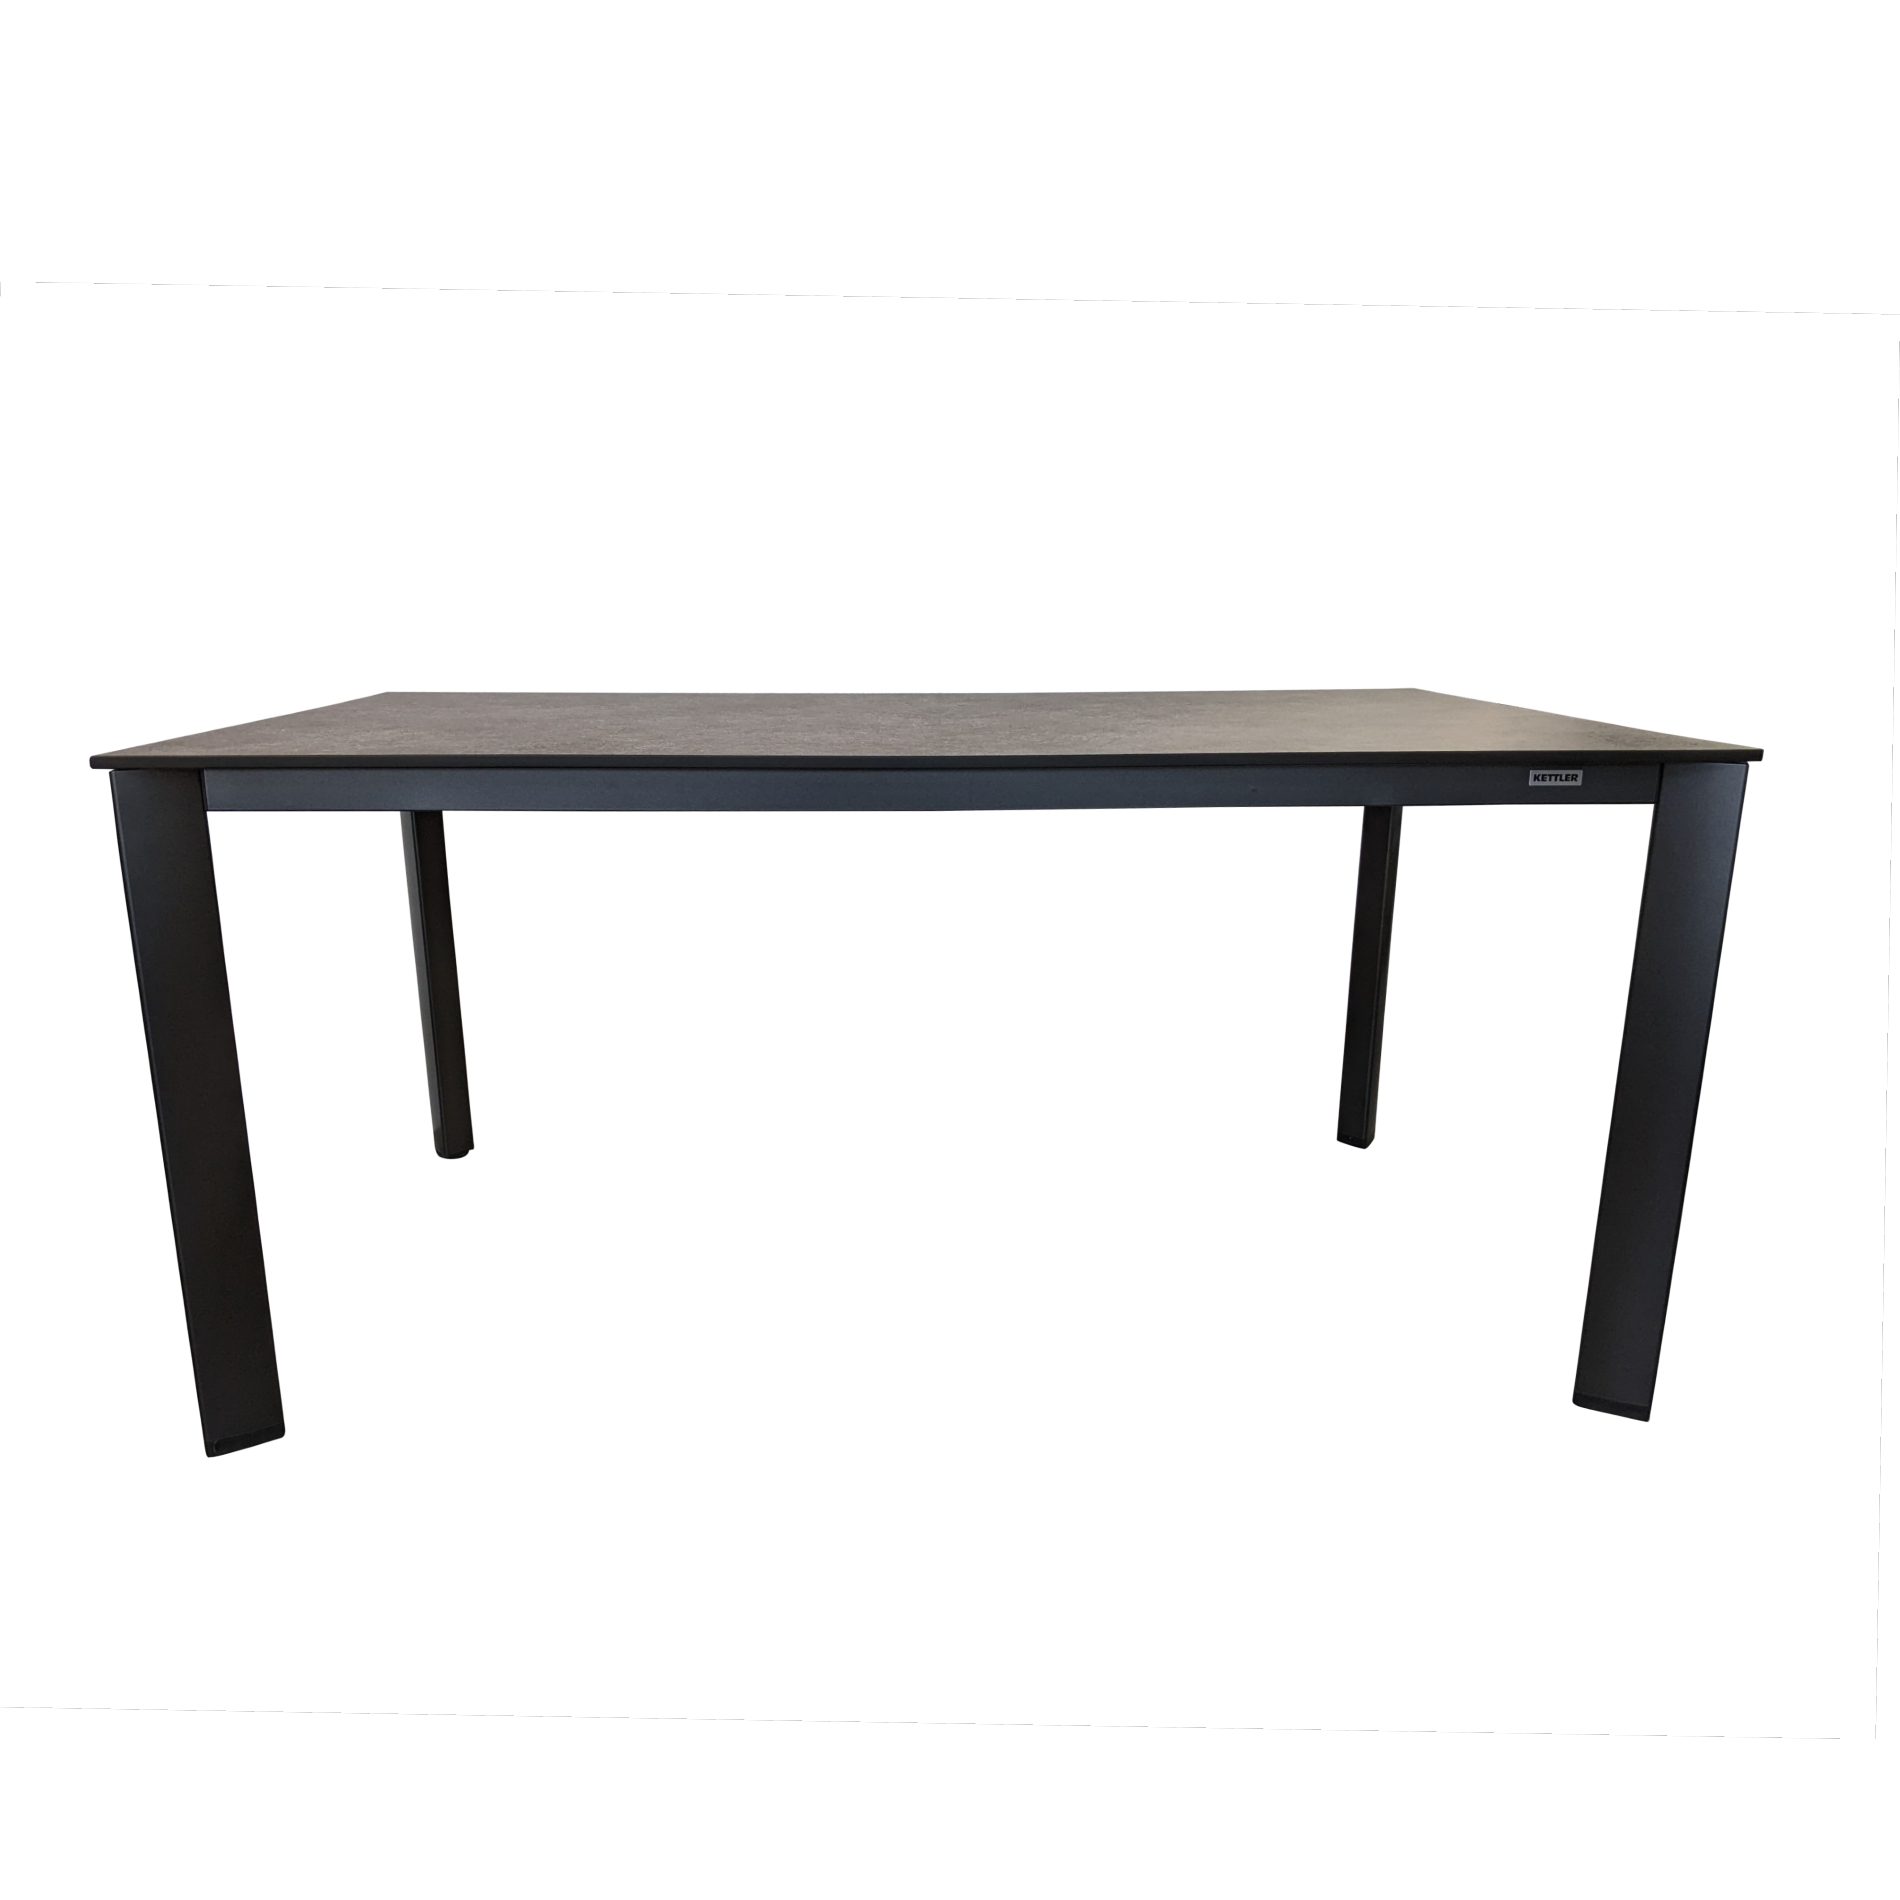 Kettler "Edge" Tischsystem Gartentisch, Gestell Aluminium anthrazit, Tischplatte HPL anthrazit, 160x95 cm